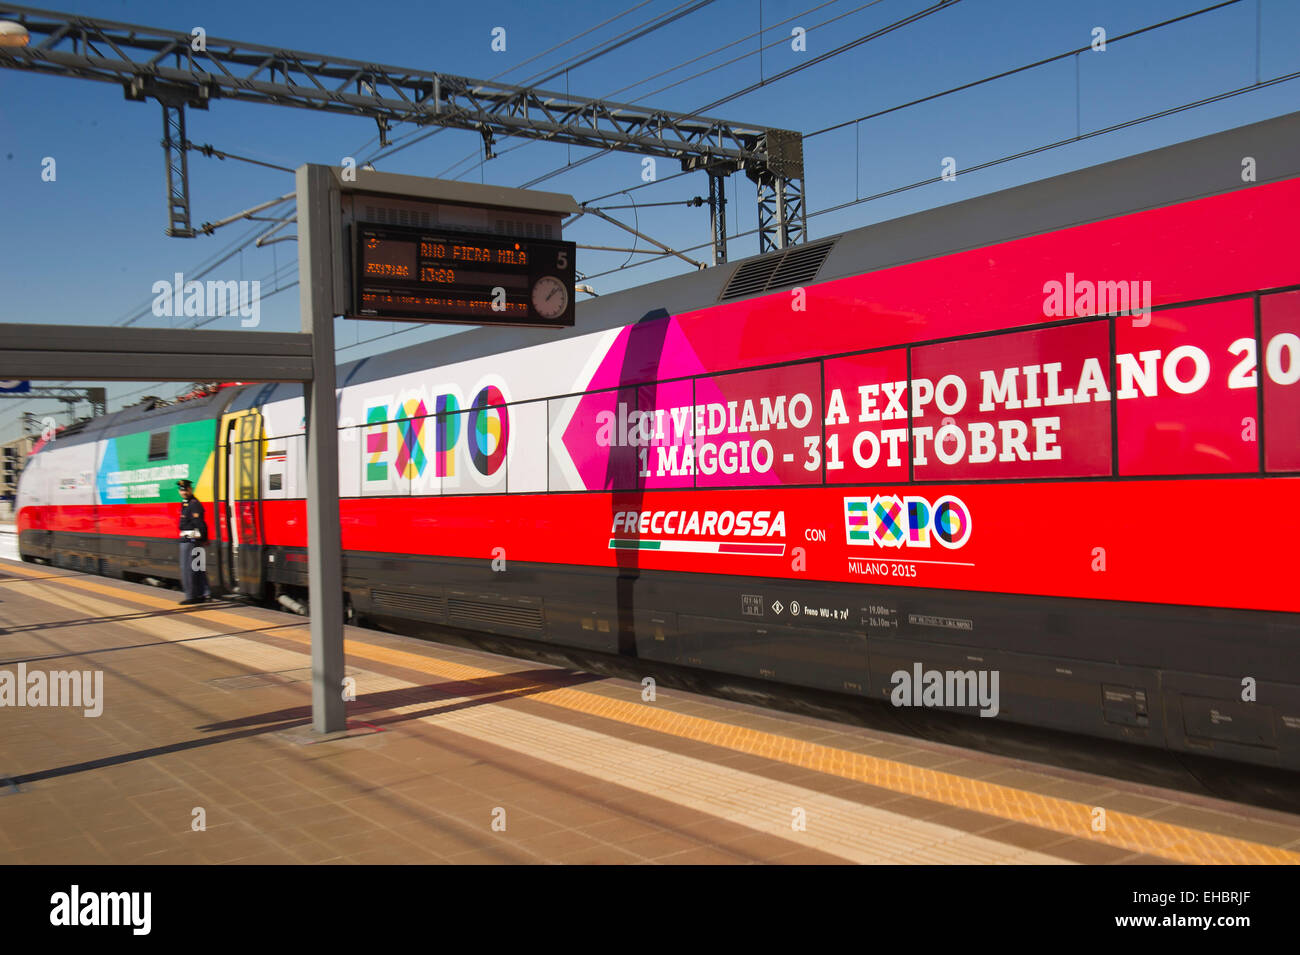 Talie. Milan, Trenitalia présente ses nouvelles couleurs qui arriveront FrecciaRossa train à la station Rho Fiera Milano Expo 2015. Banque D'Images